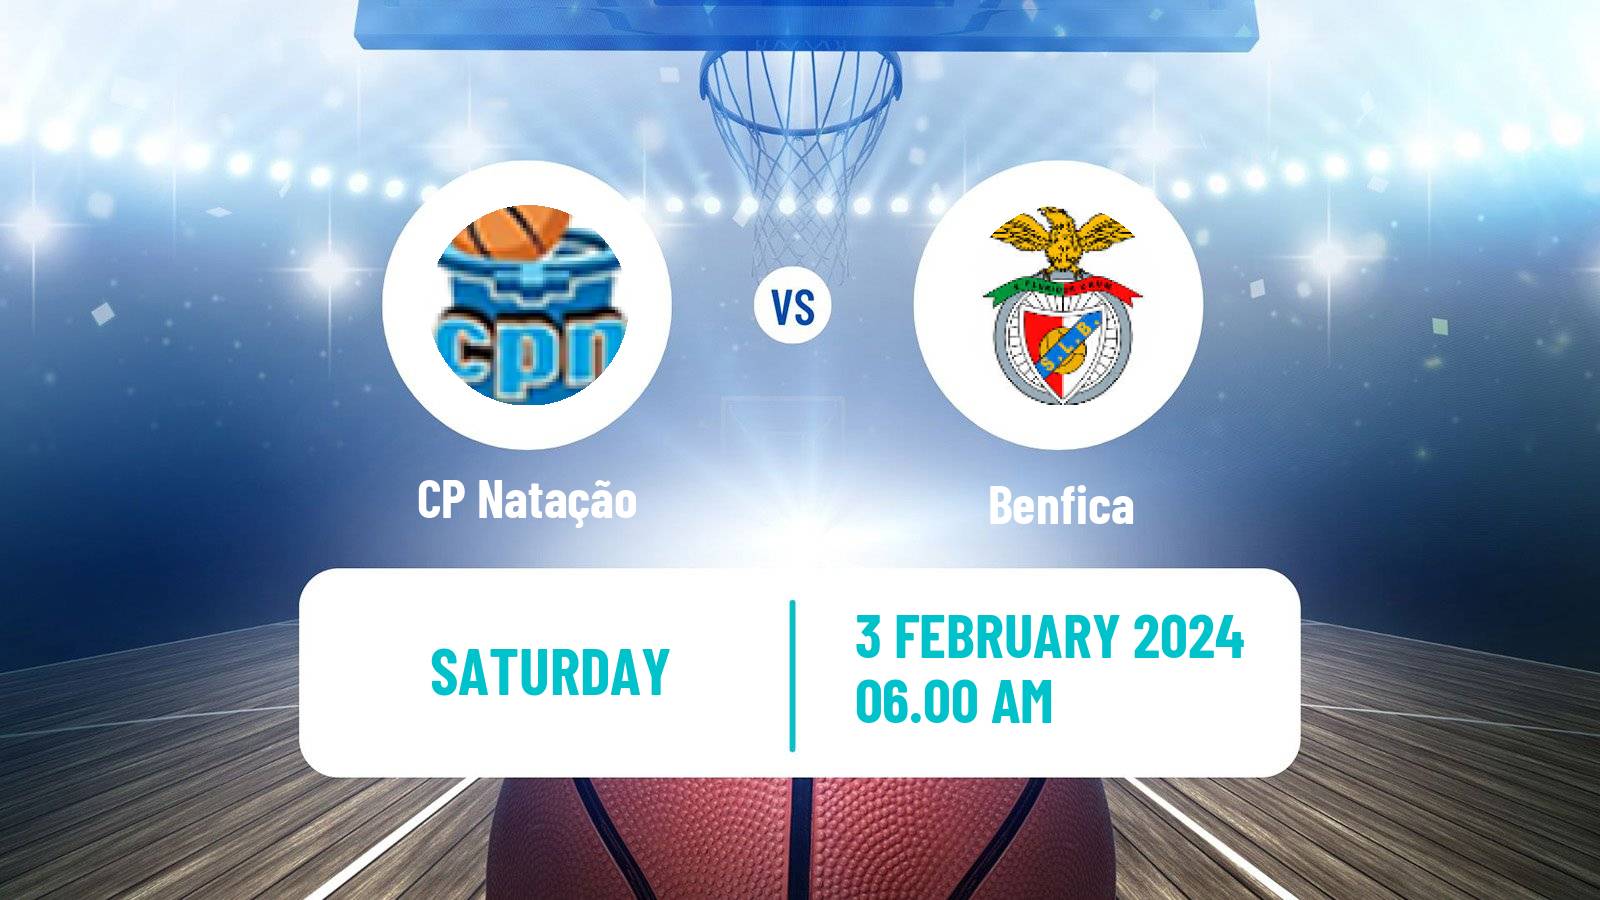 Basketball Portuguese LFB Natação - Benfica